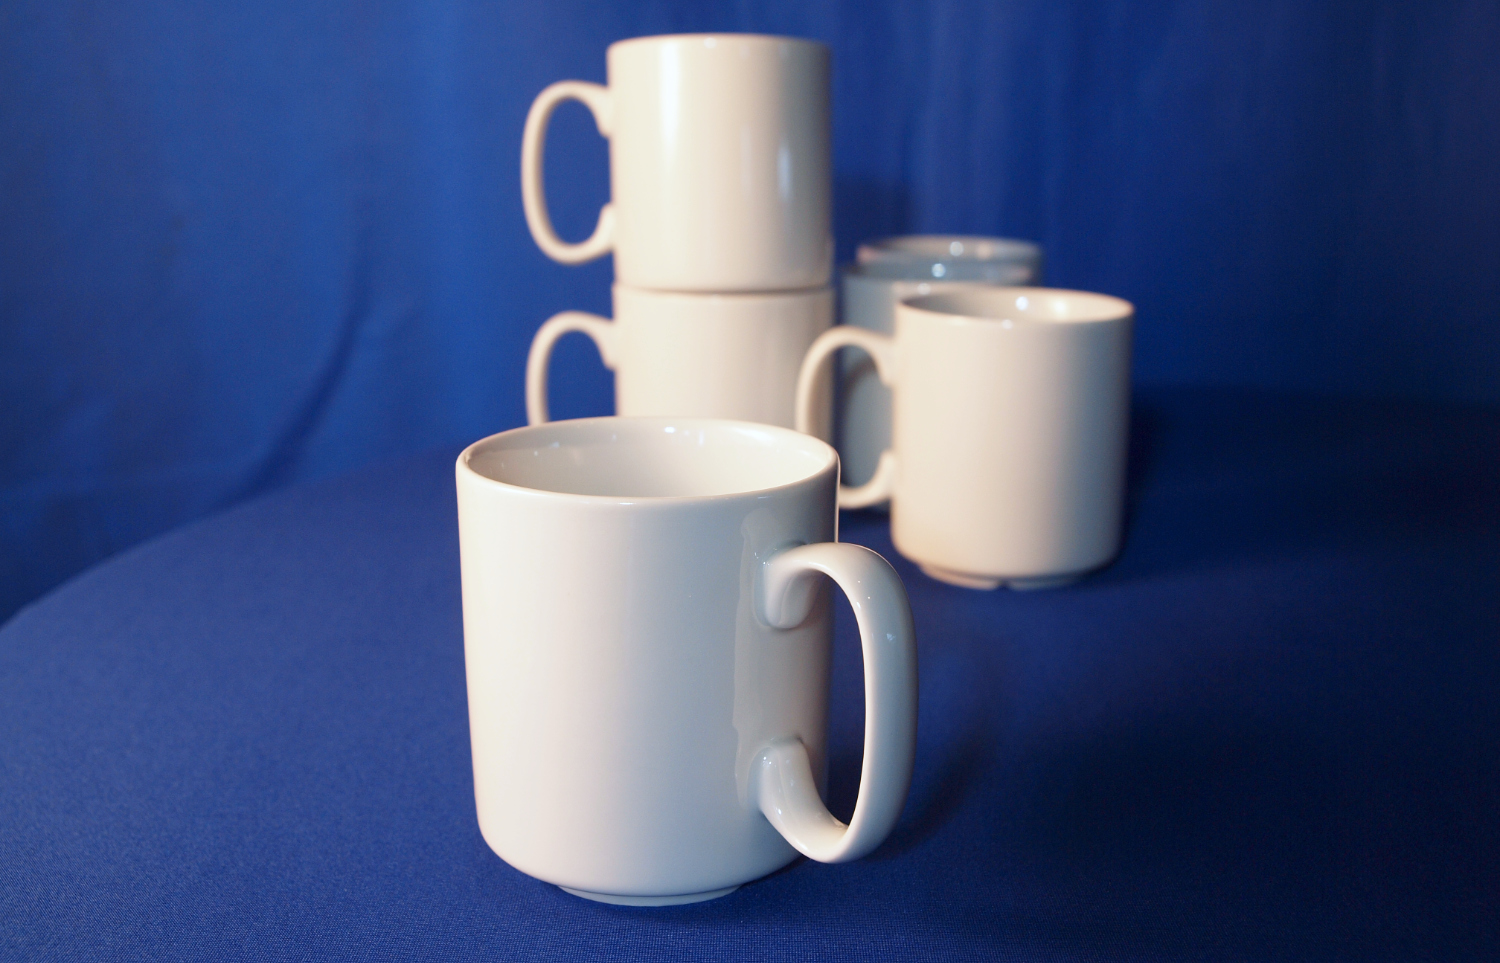 Geschirr aus Porzellan für Ihre Veranstaltung mieten, Detailansicht 6 Stk. Kaffeebecher